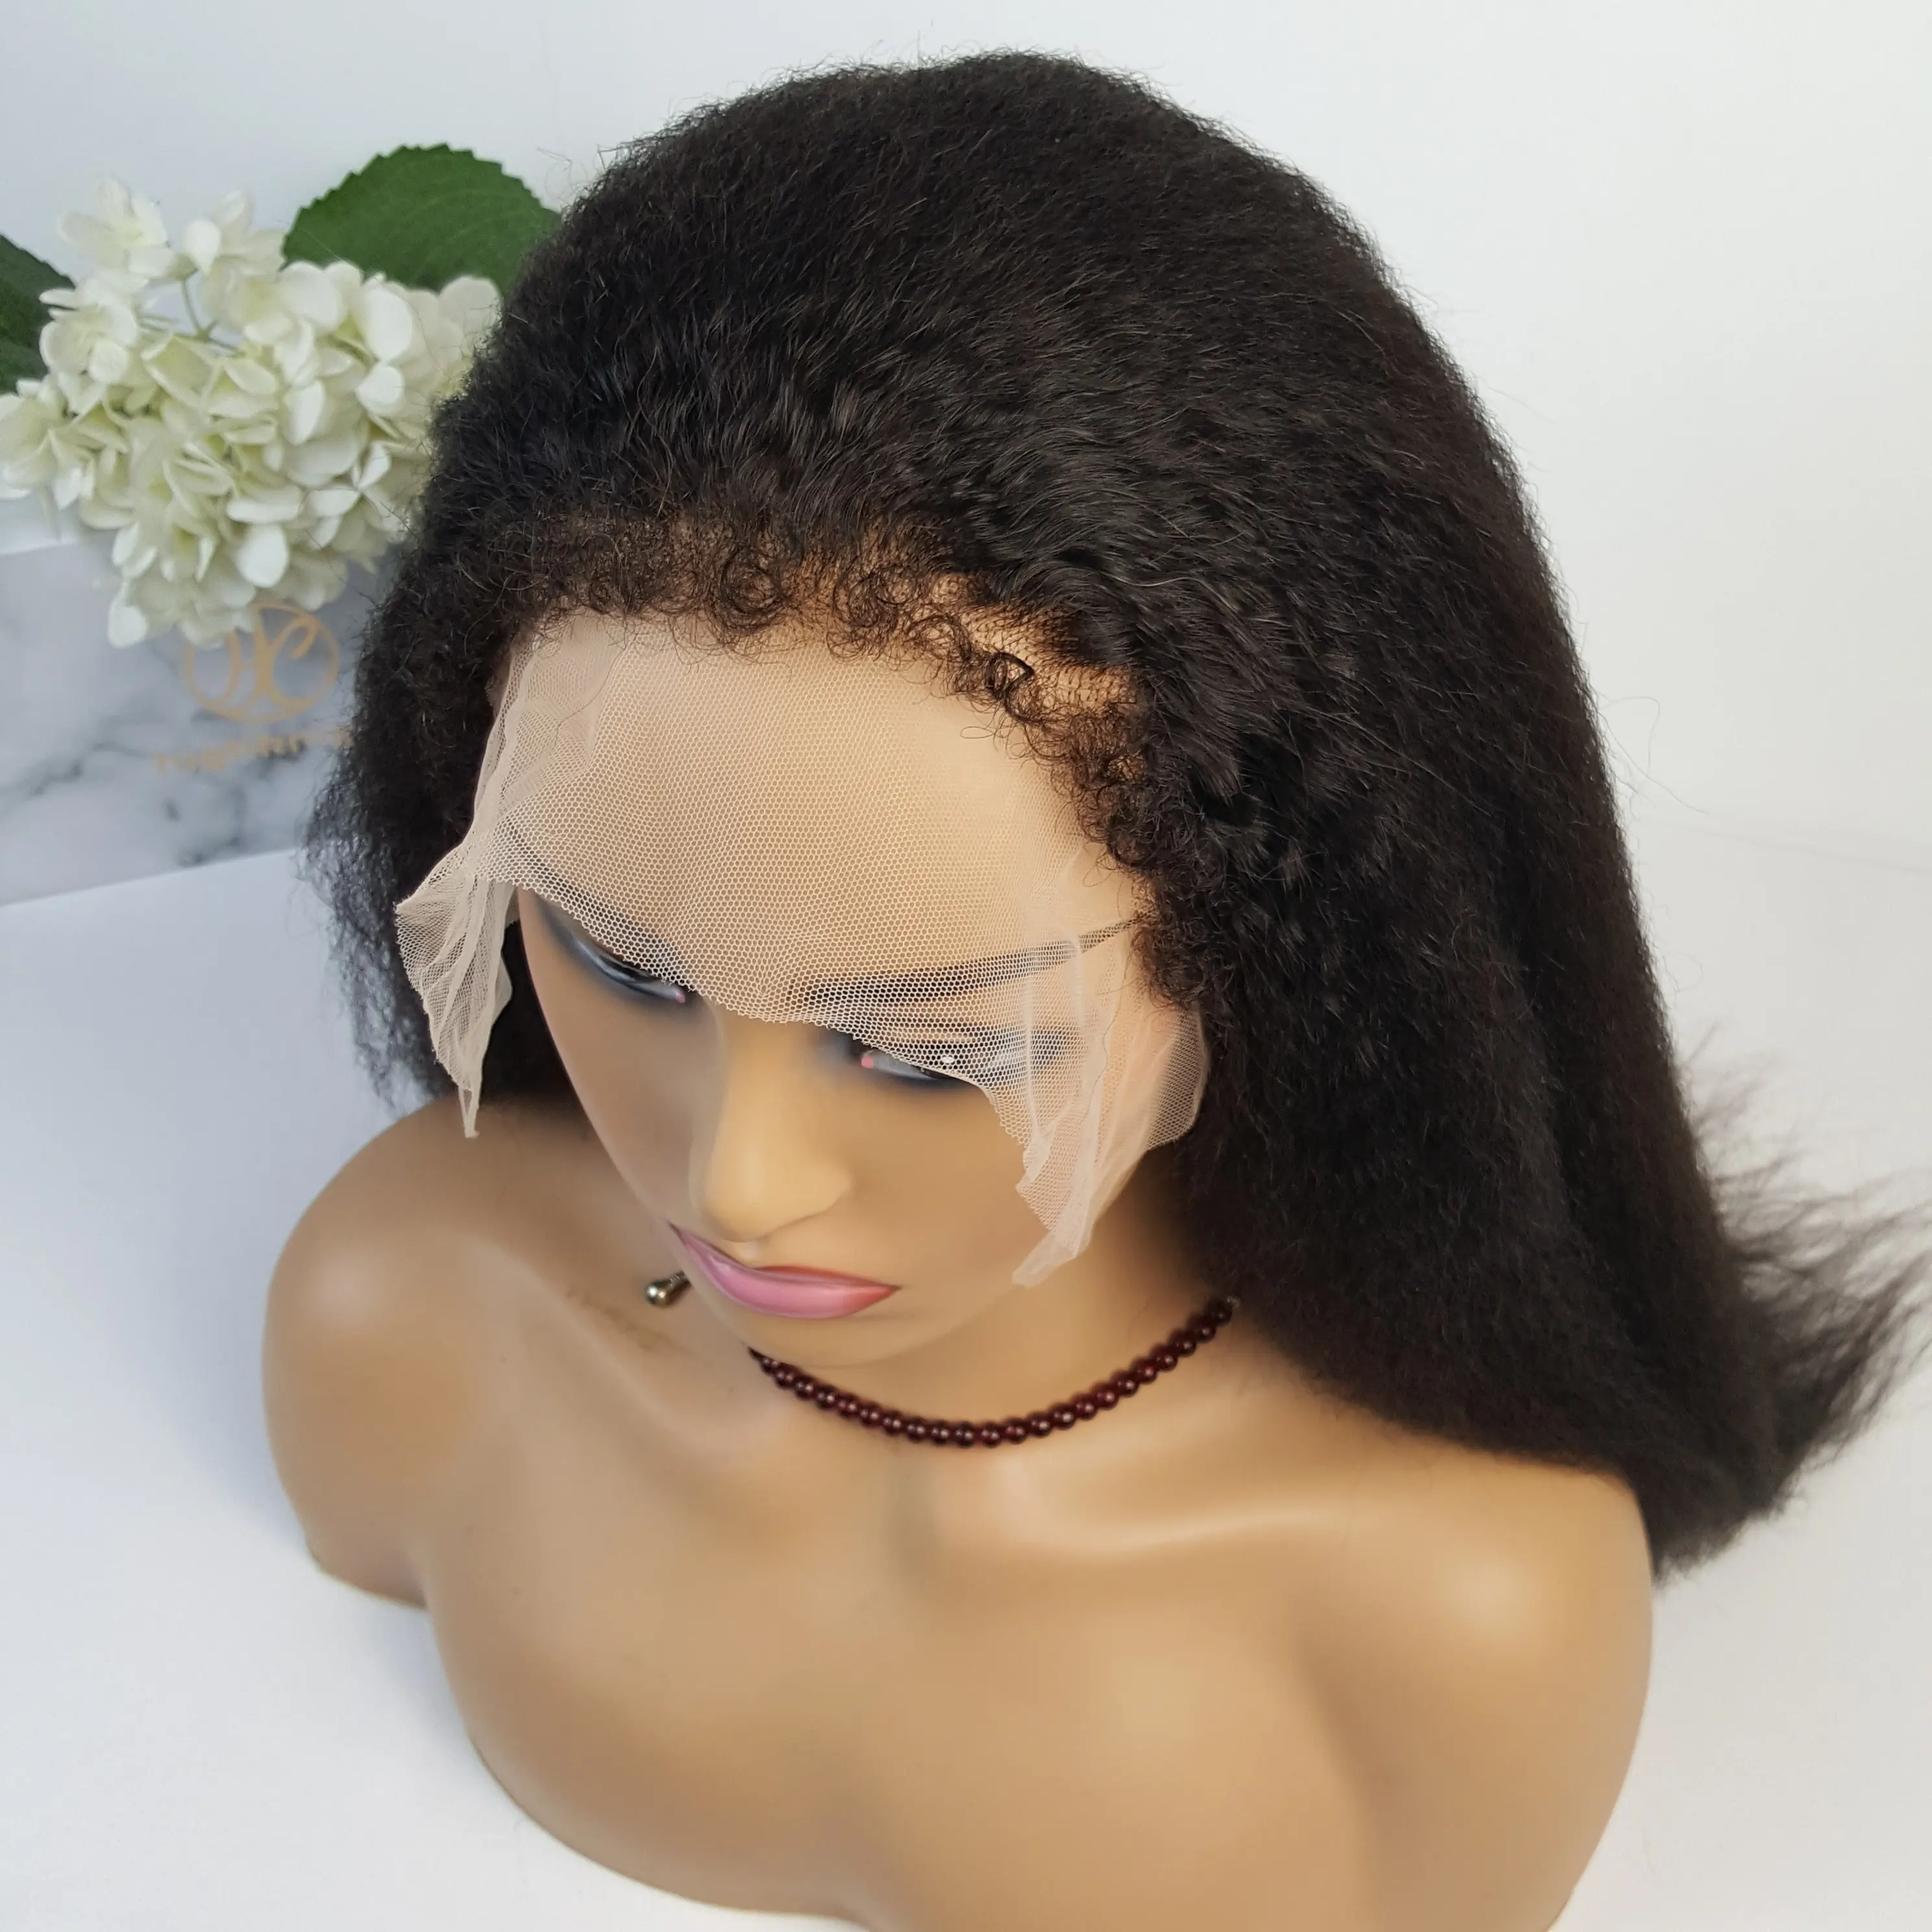 Highknight गांठदार किनारों प्राकृतिक सिर के मध्य में HD फीता सामने विग गांठदार सीधे घुंघराले बढ़त बच्चे बाल फीता बंद होने के साथ मानव बाल wigs